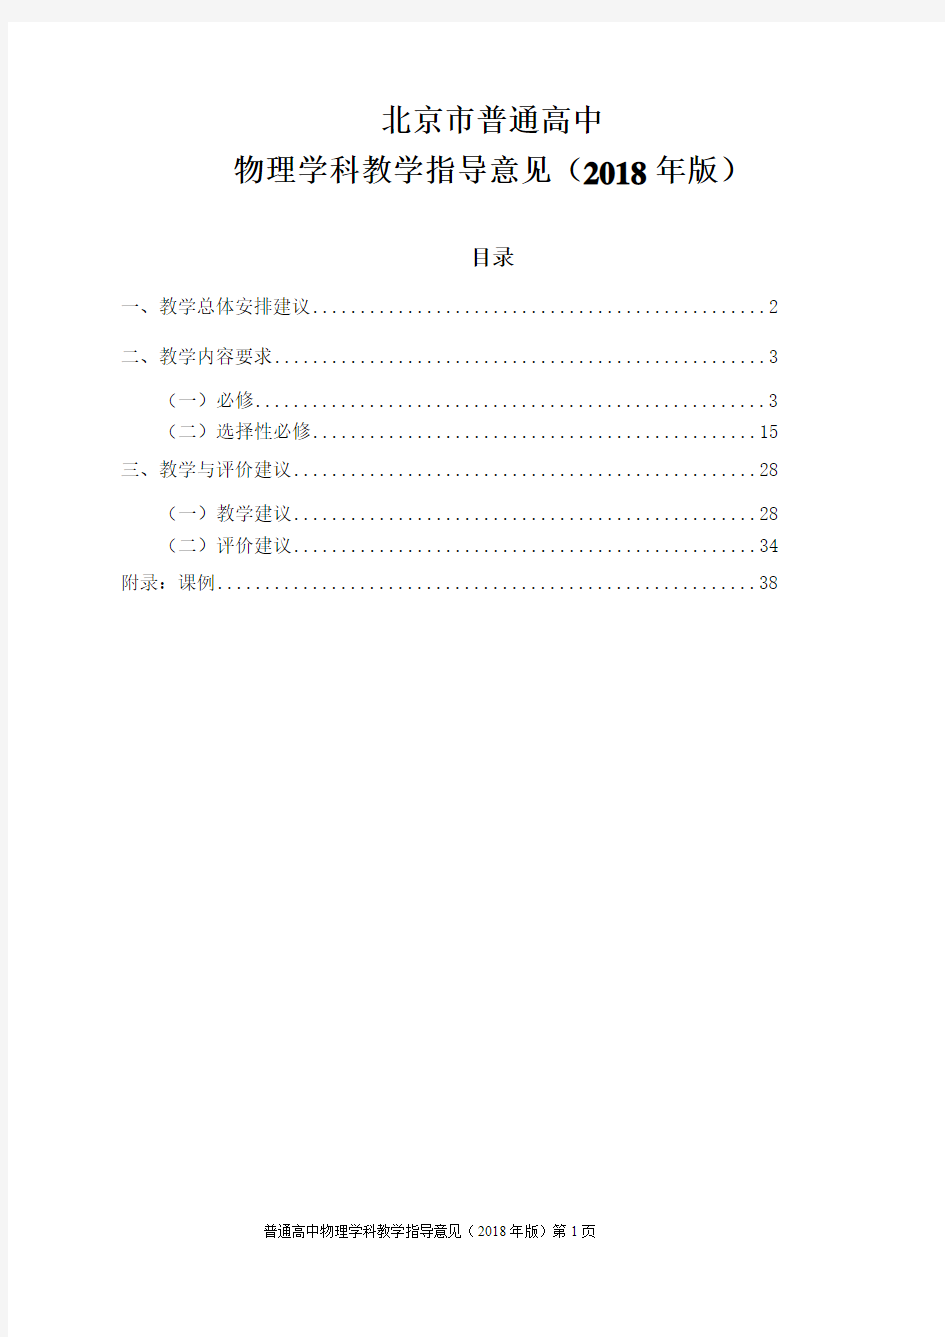 北京市普通高中物理学科教学指导意见(2018年版)